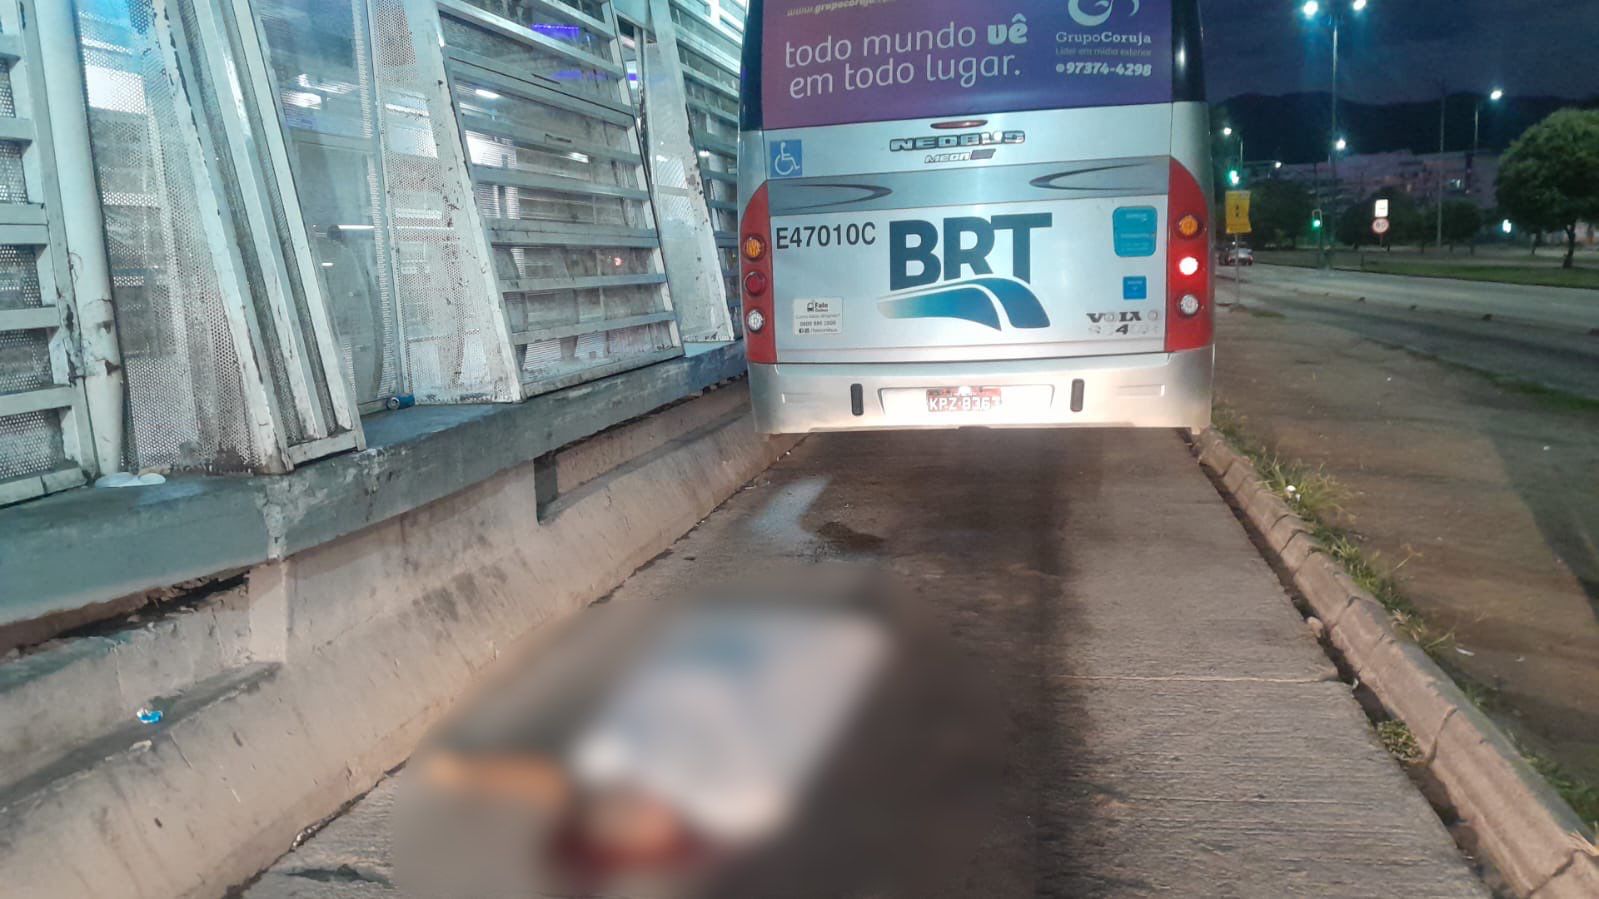 Jovem morre após ser empurrado de BRT em movimento, no Recreio